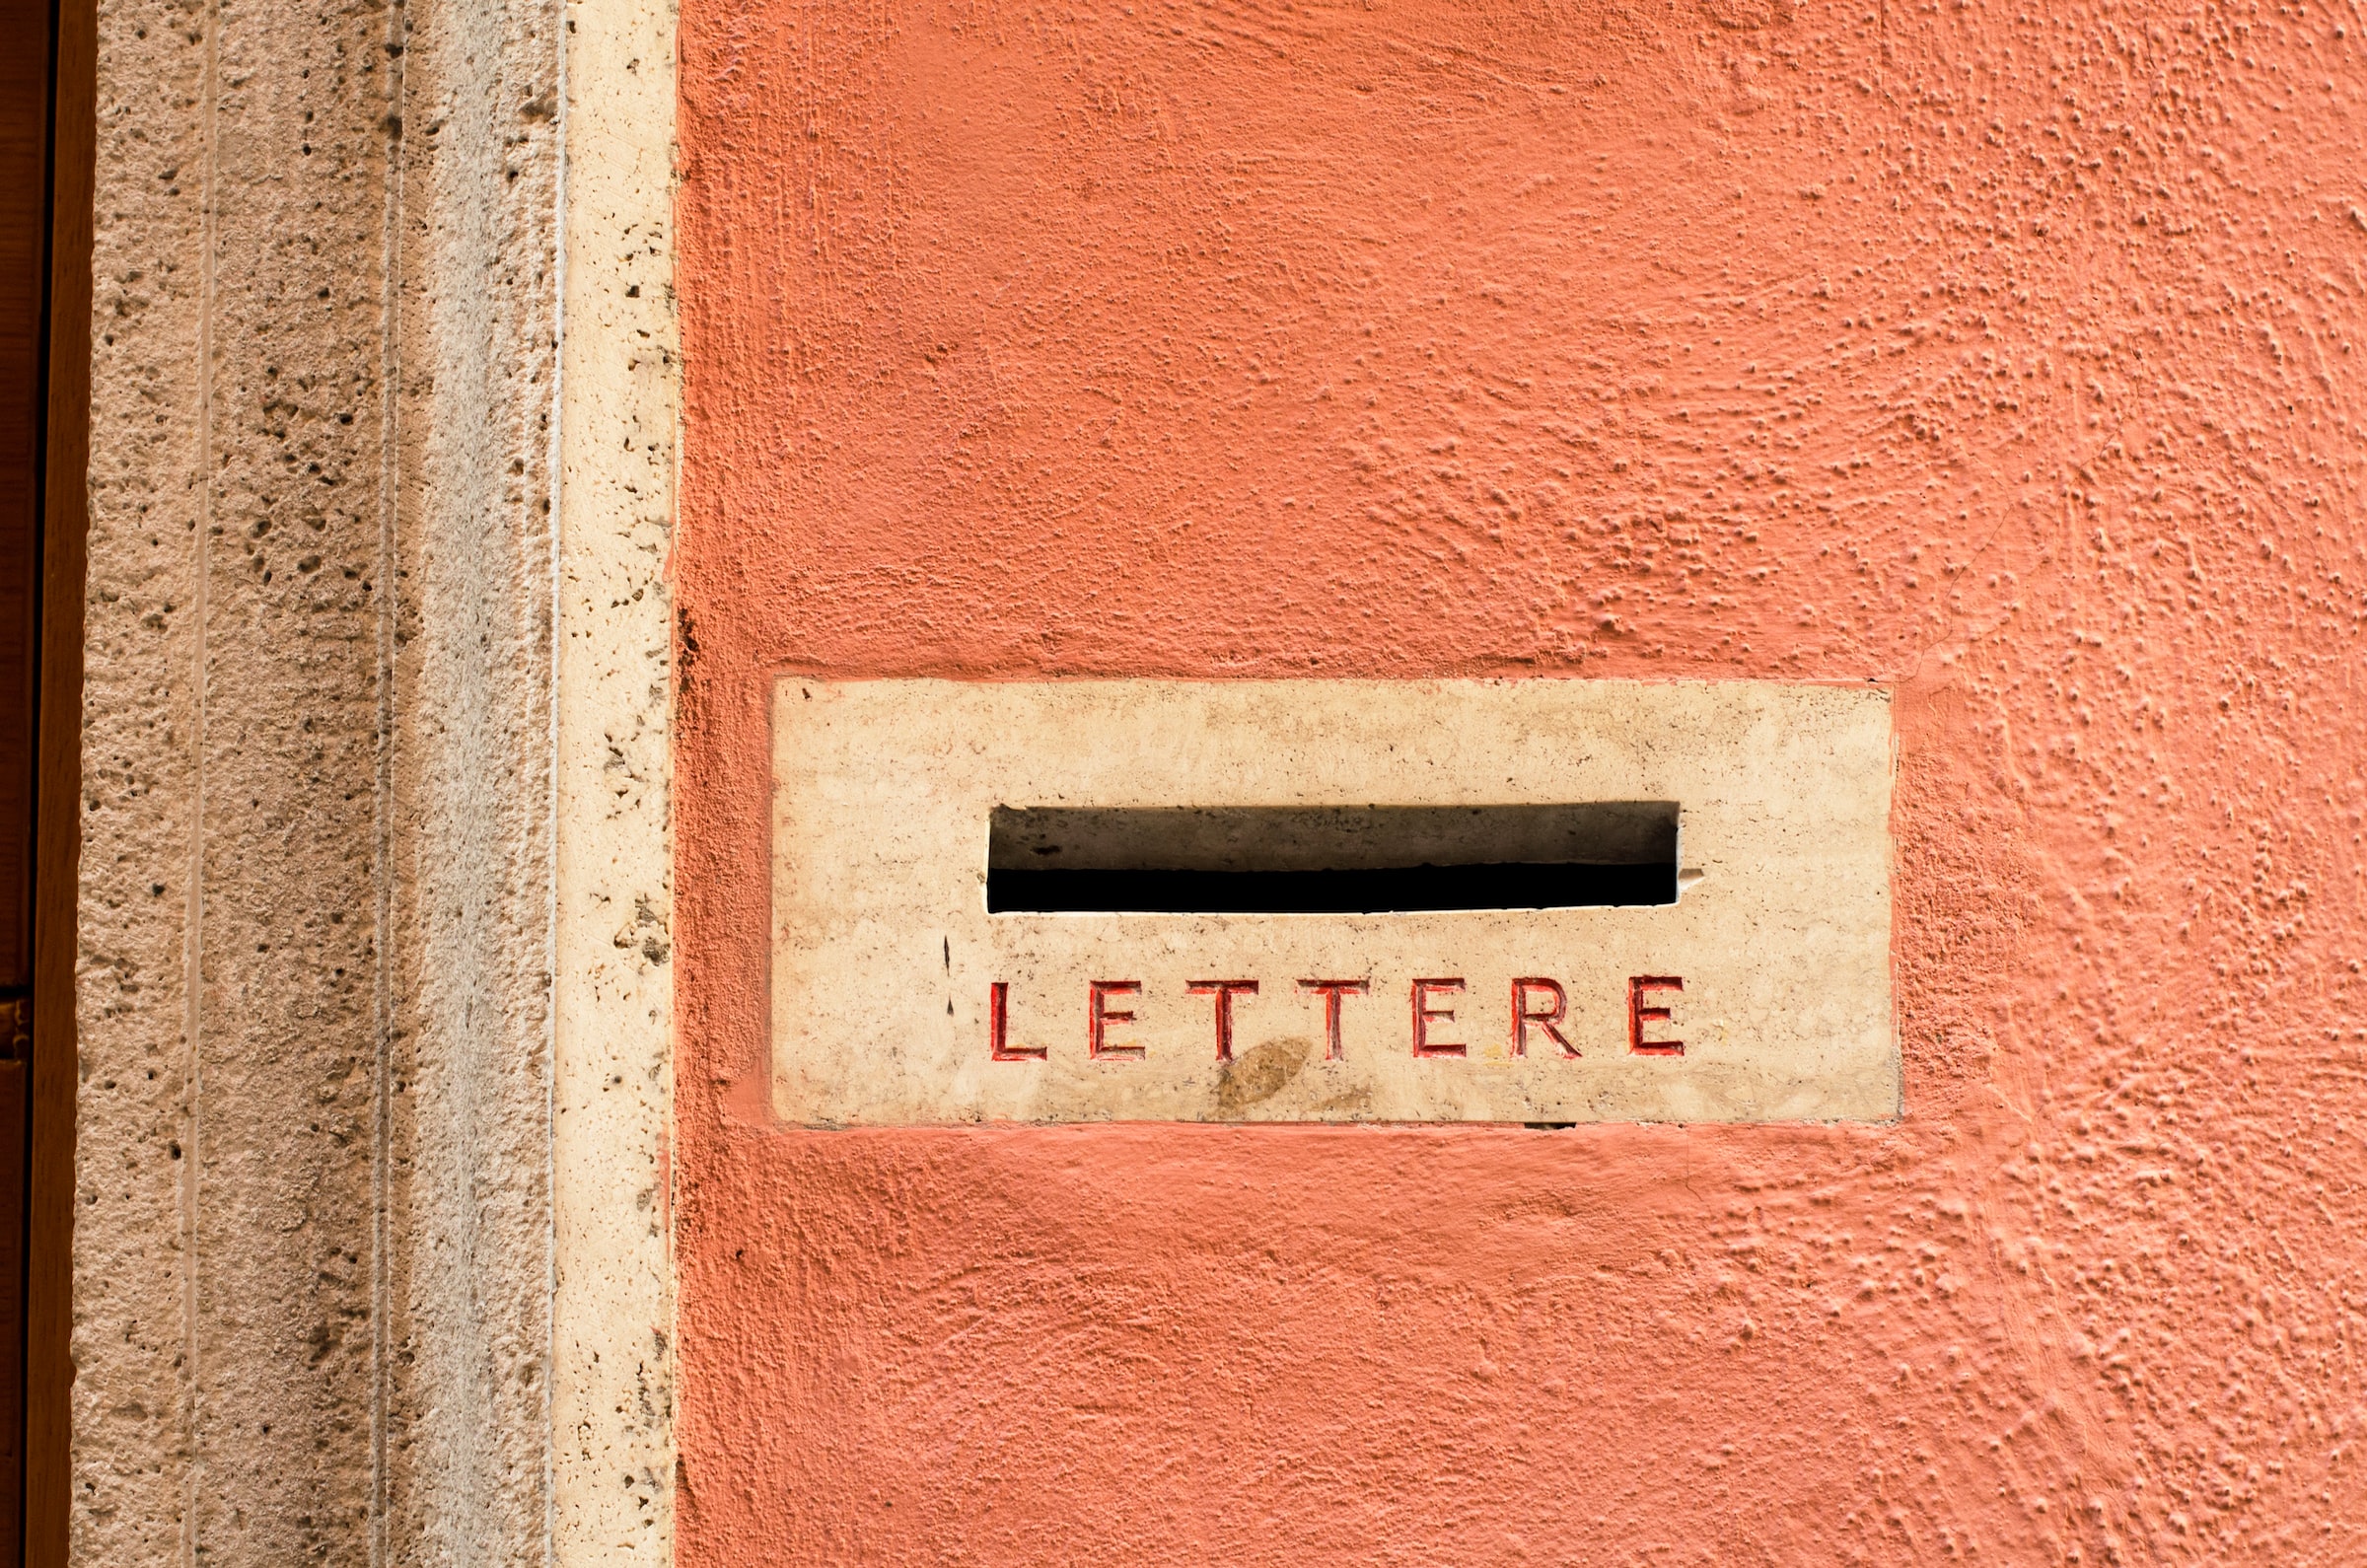 En postkasse med ordet "lettere" og "Brevsstemmer" på.